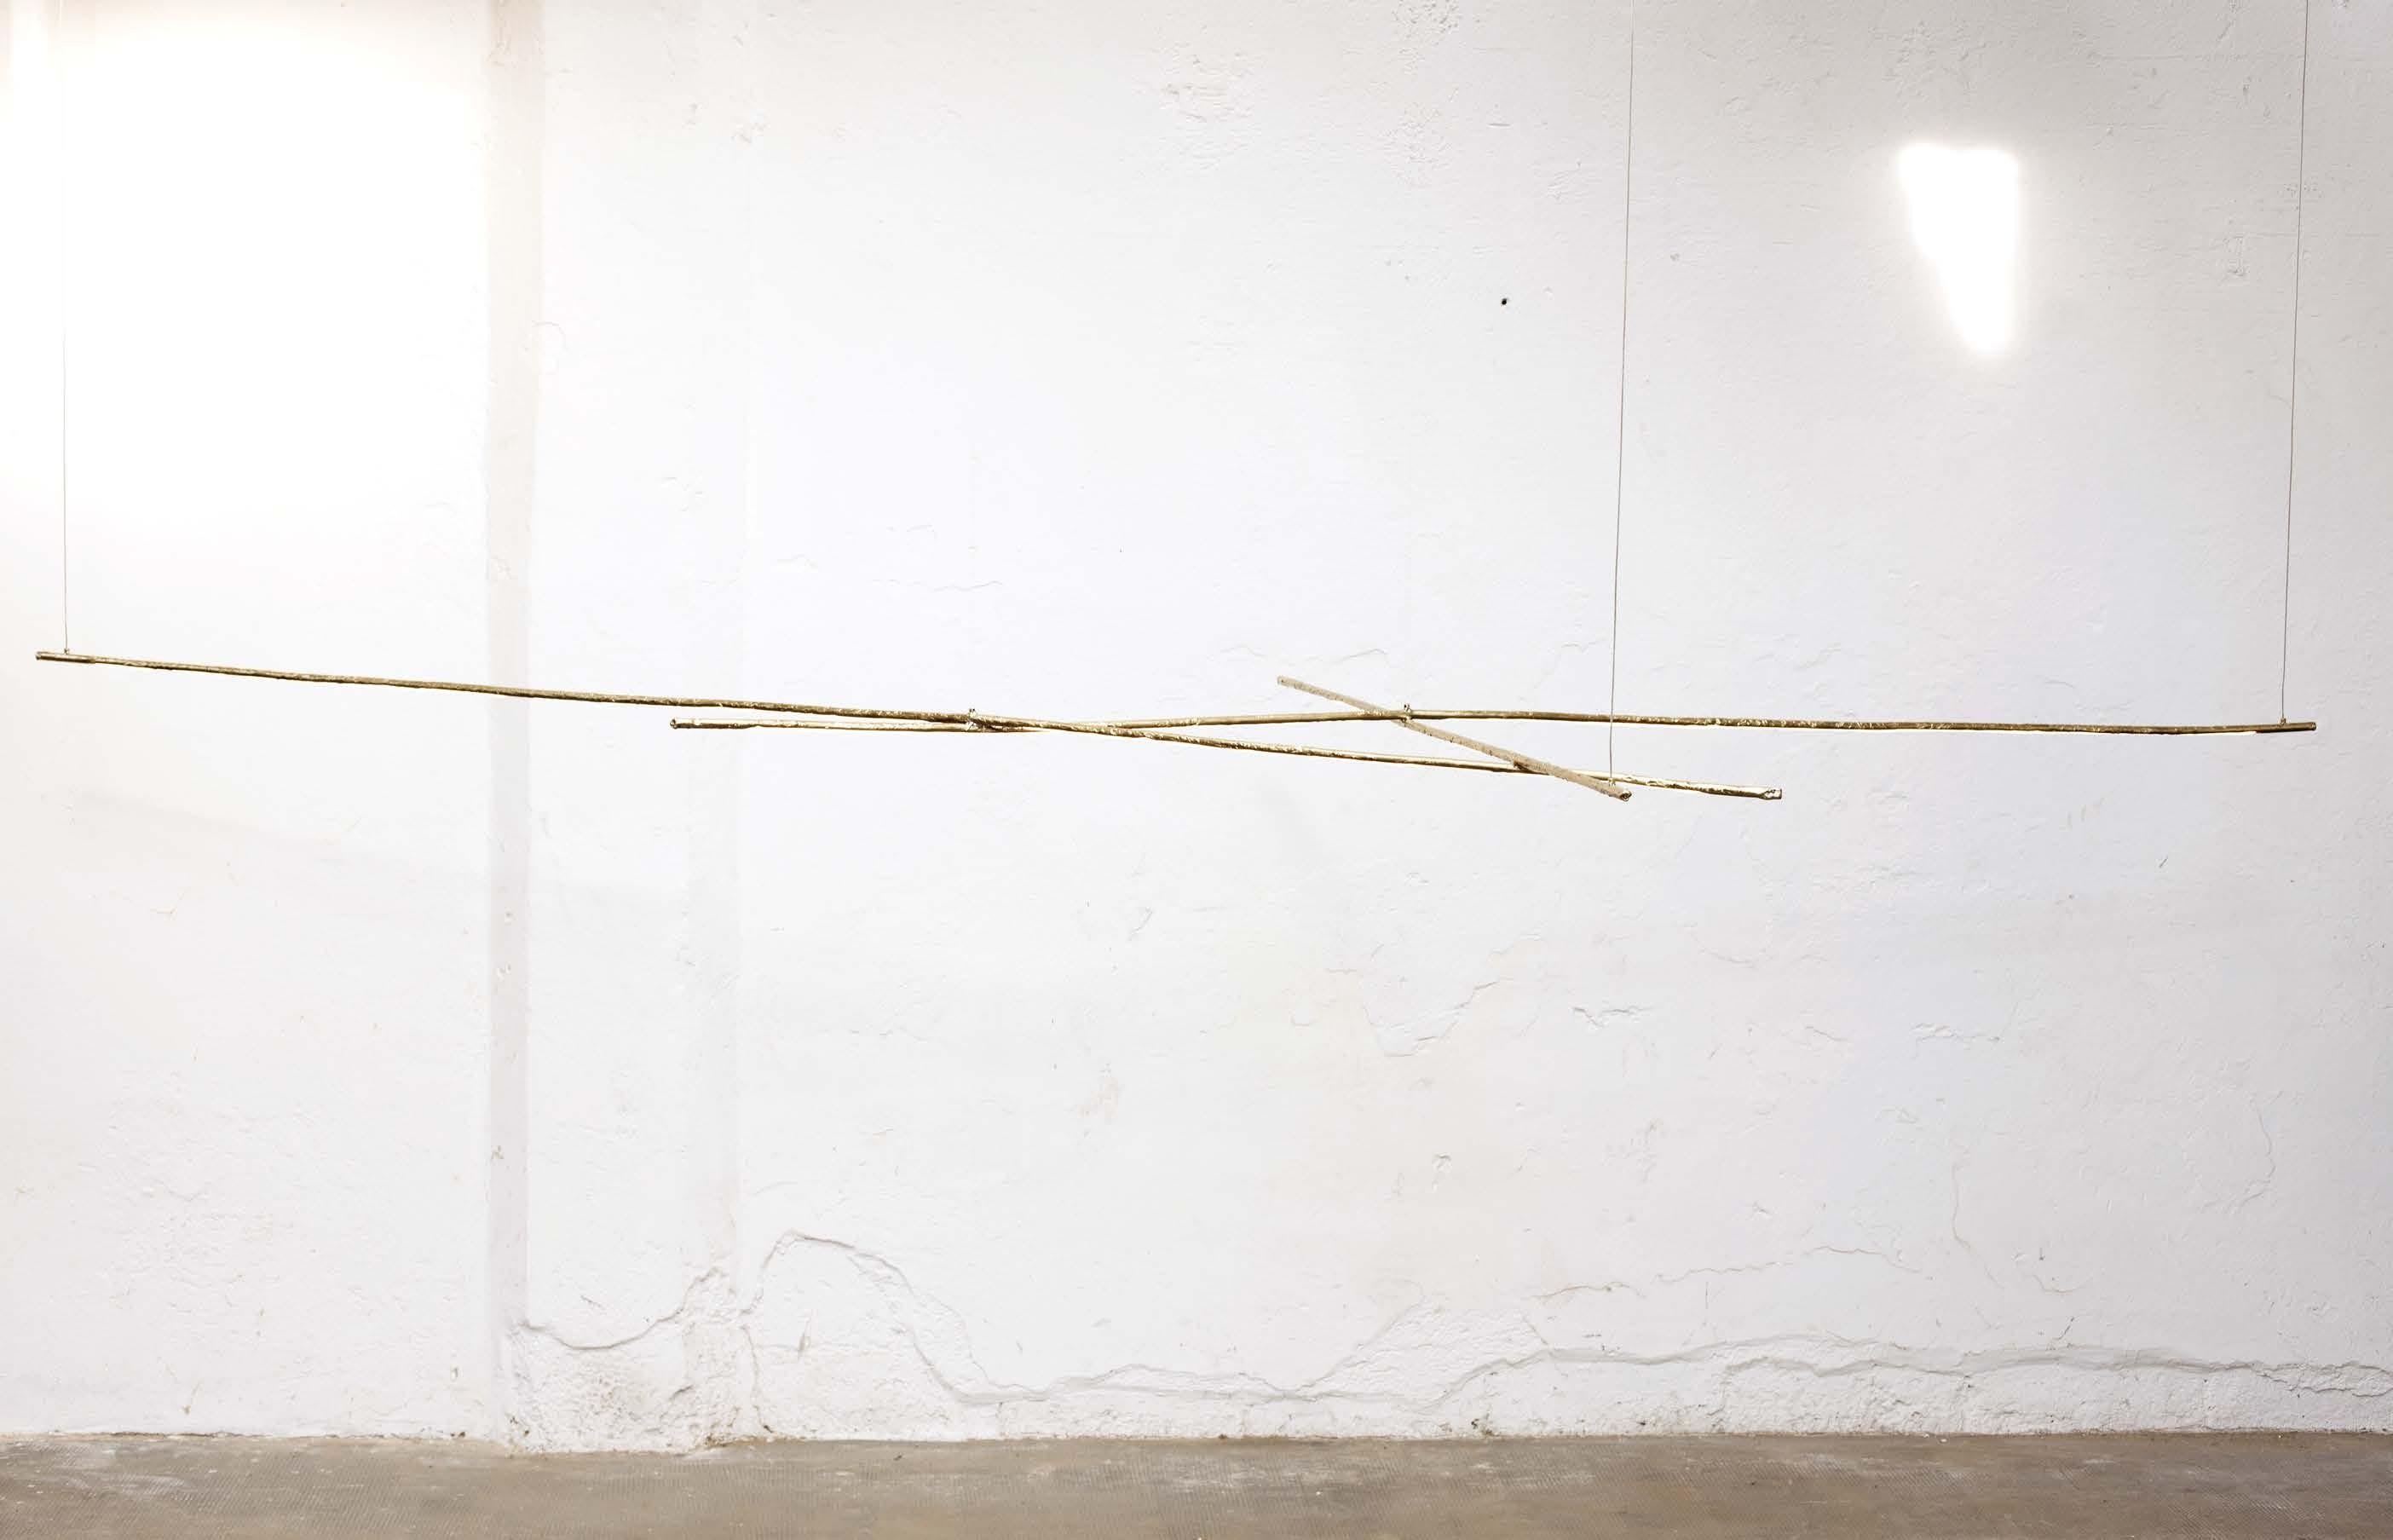 Skulpturale messingfarbene hängeleuchte Howl 3 von Morghen Studio
Abmessungen: 300 x 90 x H 30
MATERIALIEN: Geschmolzenes Messing, LED-Licht, Silikon
Oberflächen: brüniert, geschwärzt, versilbert
Länge: anpassbar
Lichtposition und -länge: